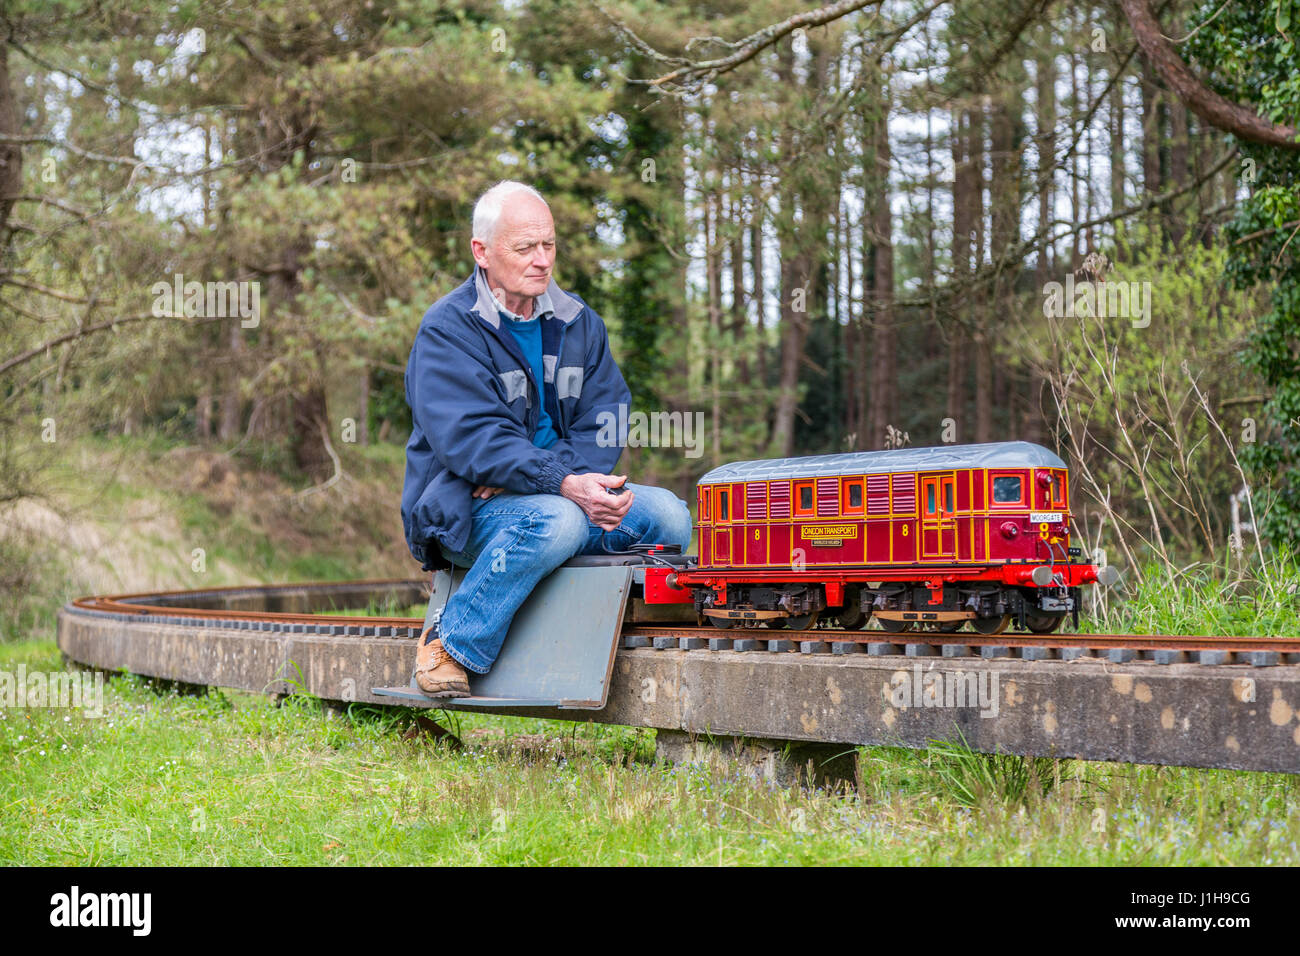 Llanelli & Bezirk Modell Ingenieure Frühjahr Rallye auf die erhöhte und Boden-Miniatur-Eisenbahn zu verfolgen, an Pembrey Country Park, Wales, UK Stockfoto